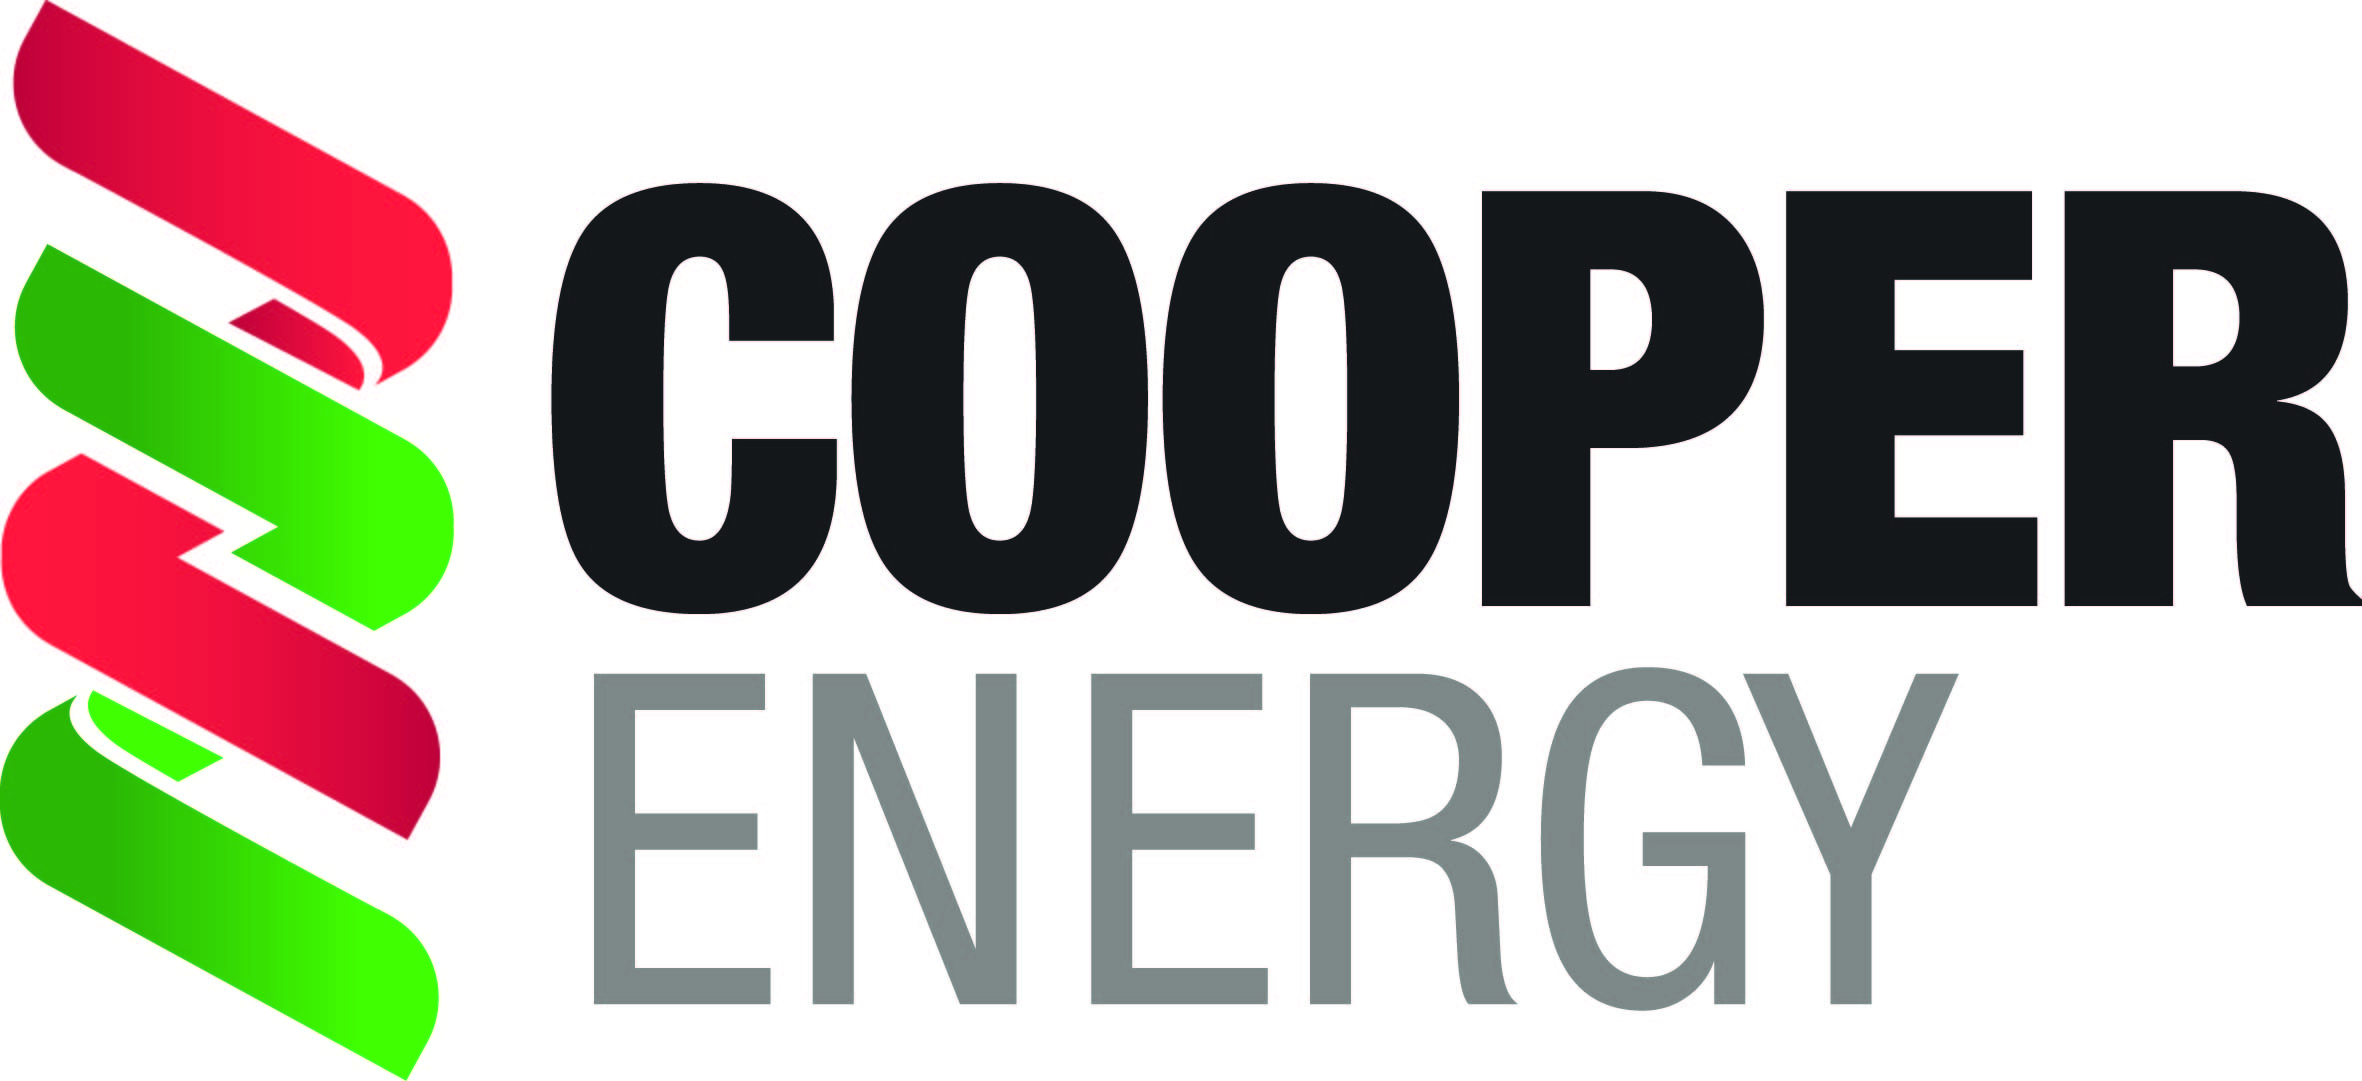 Cooper Energy Logo